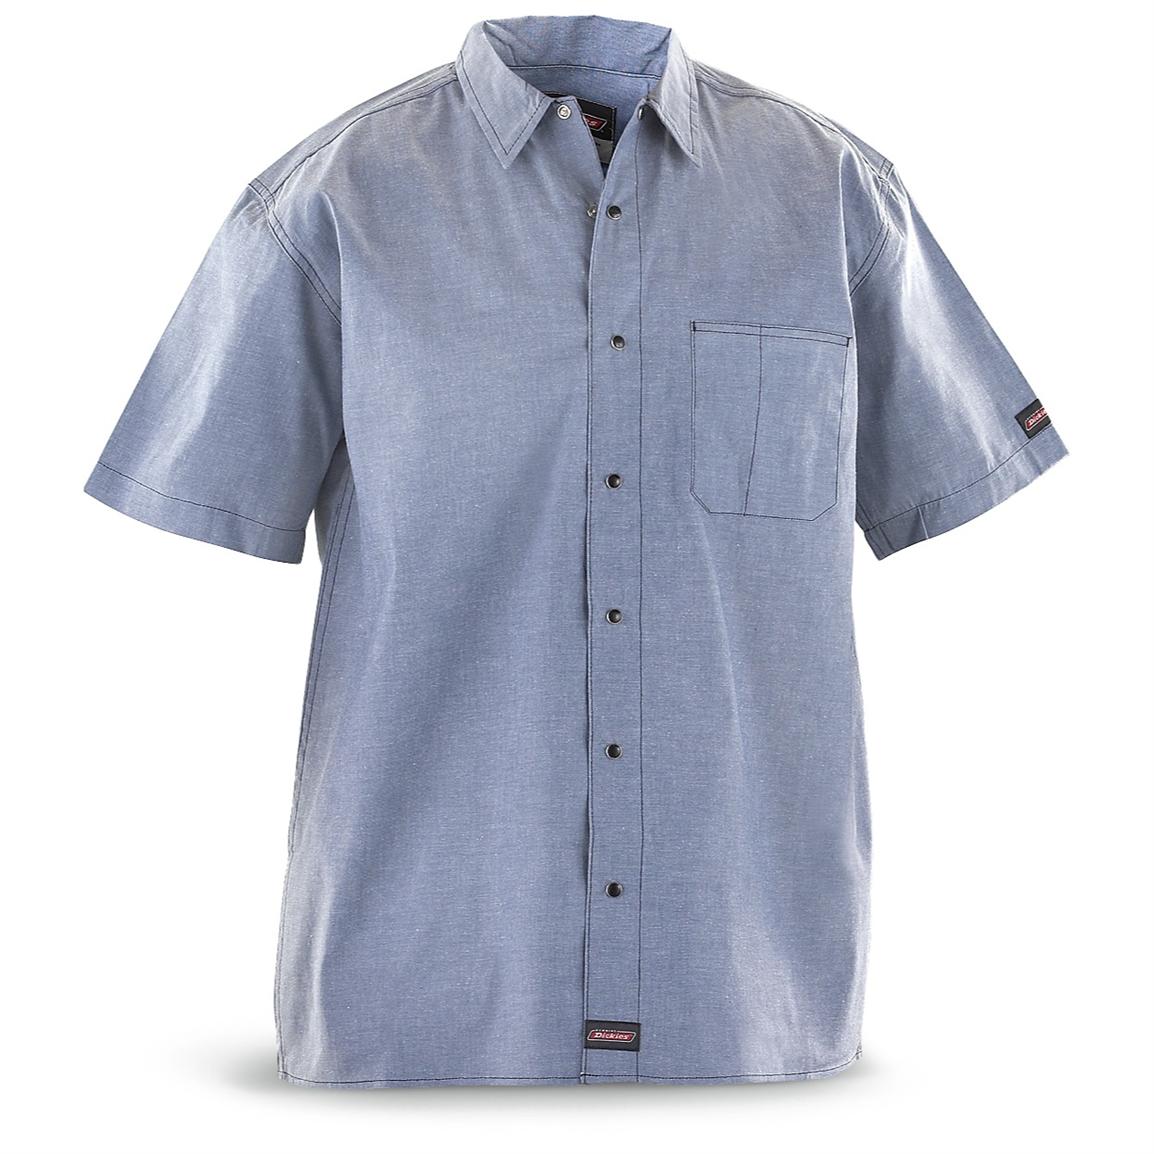 2 Dickies® Short - sleeved Chambray Shirts - 205338, Shirts at ...